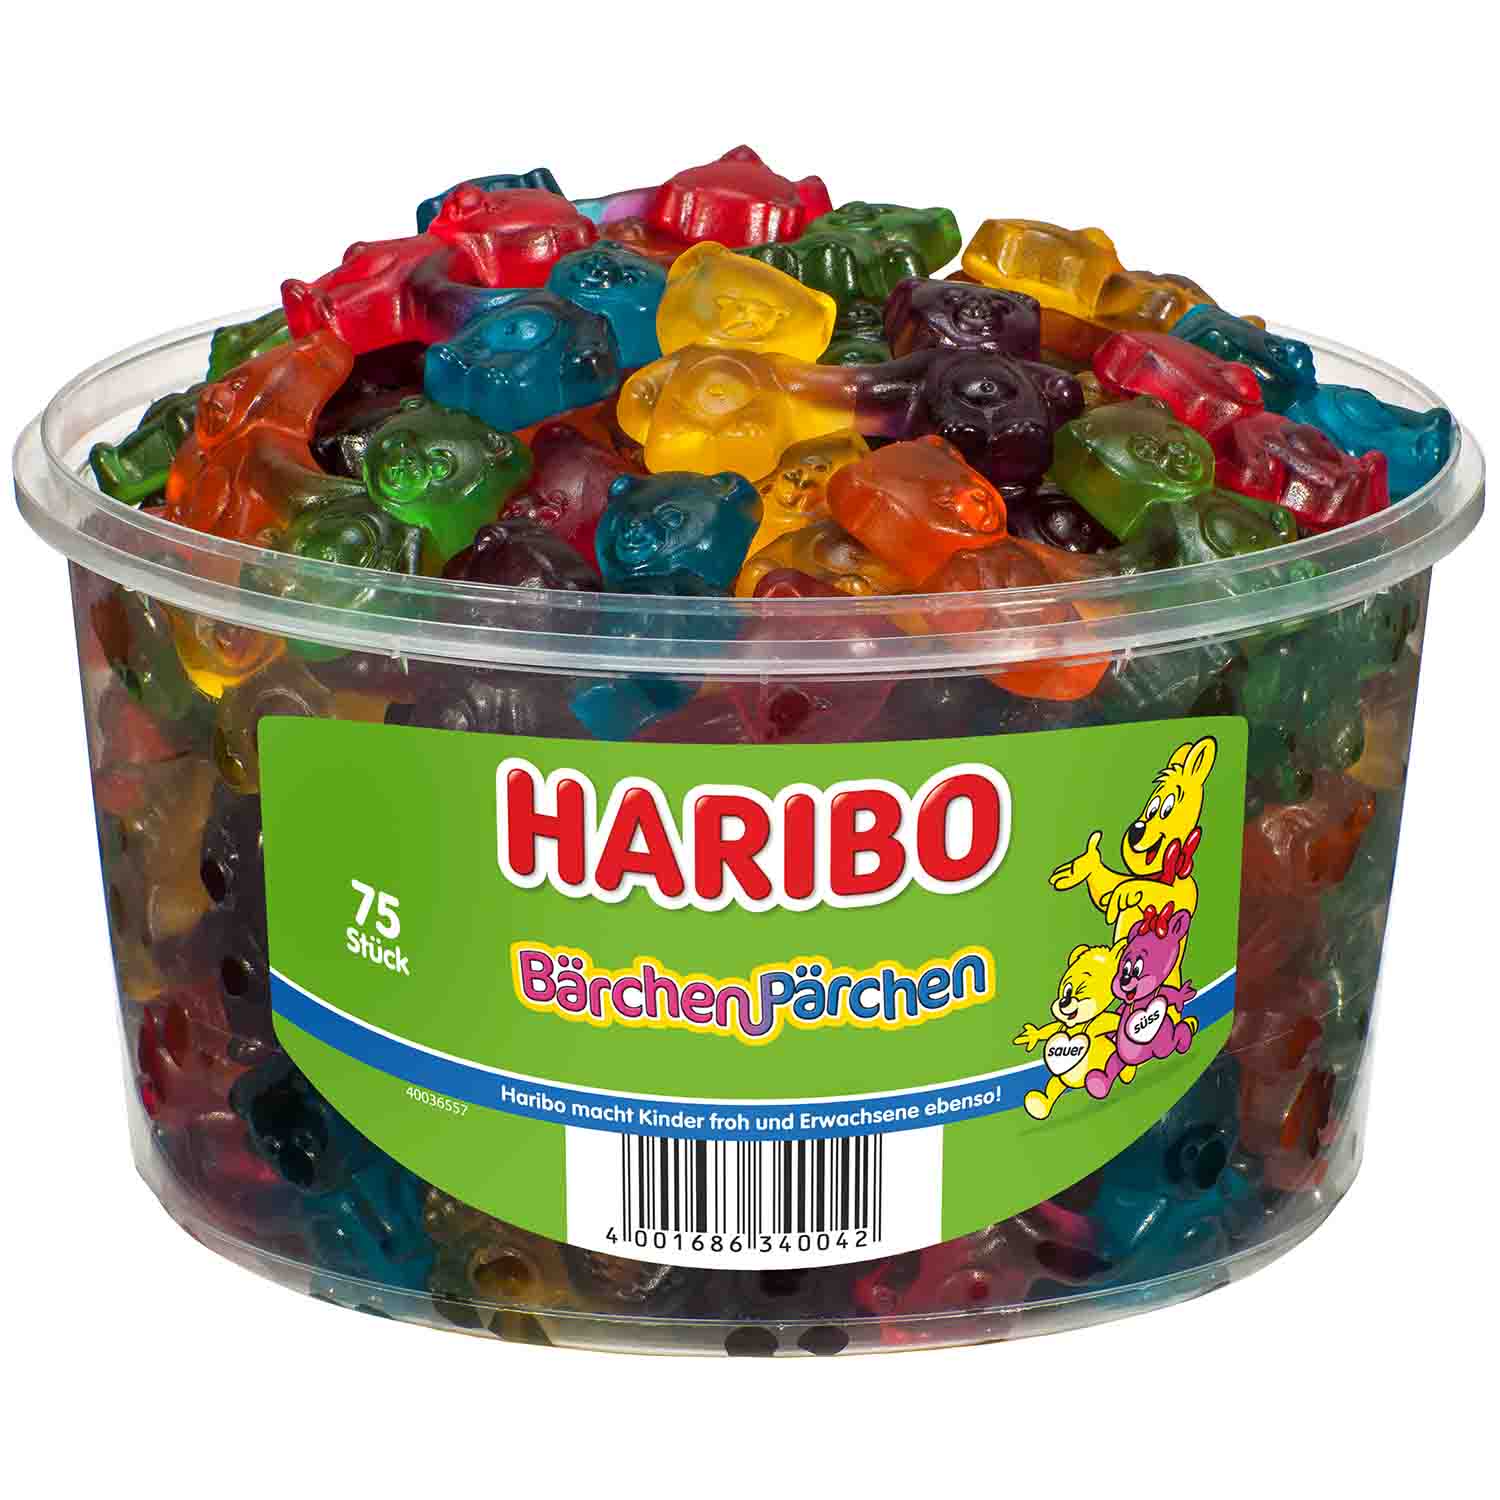 Haribo Bärchen-Pärchen 75er | Online kaufen im World of Sweets Shop